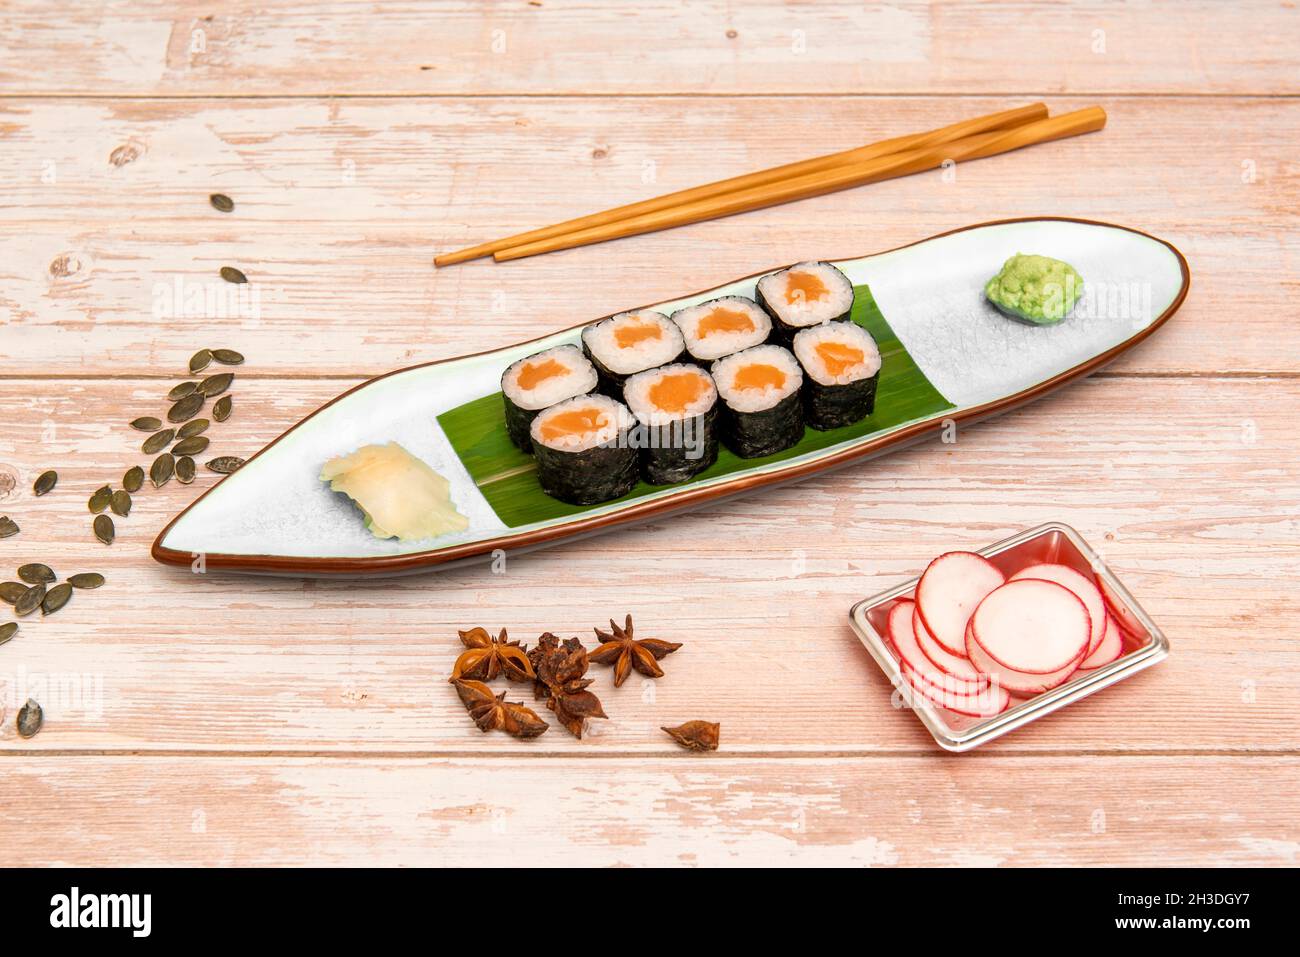 Plat maki au saumon norvégien avec riz blanc, vinaigre japonais avec wasabi, ginseng, baguettes, radis, graines de citrouille et anis étoilé Banque D'Images